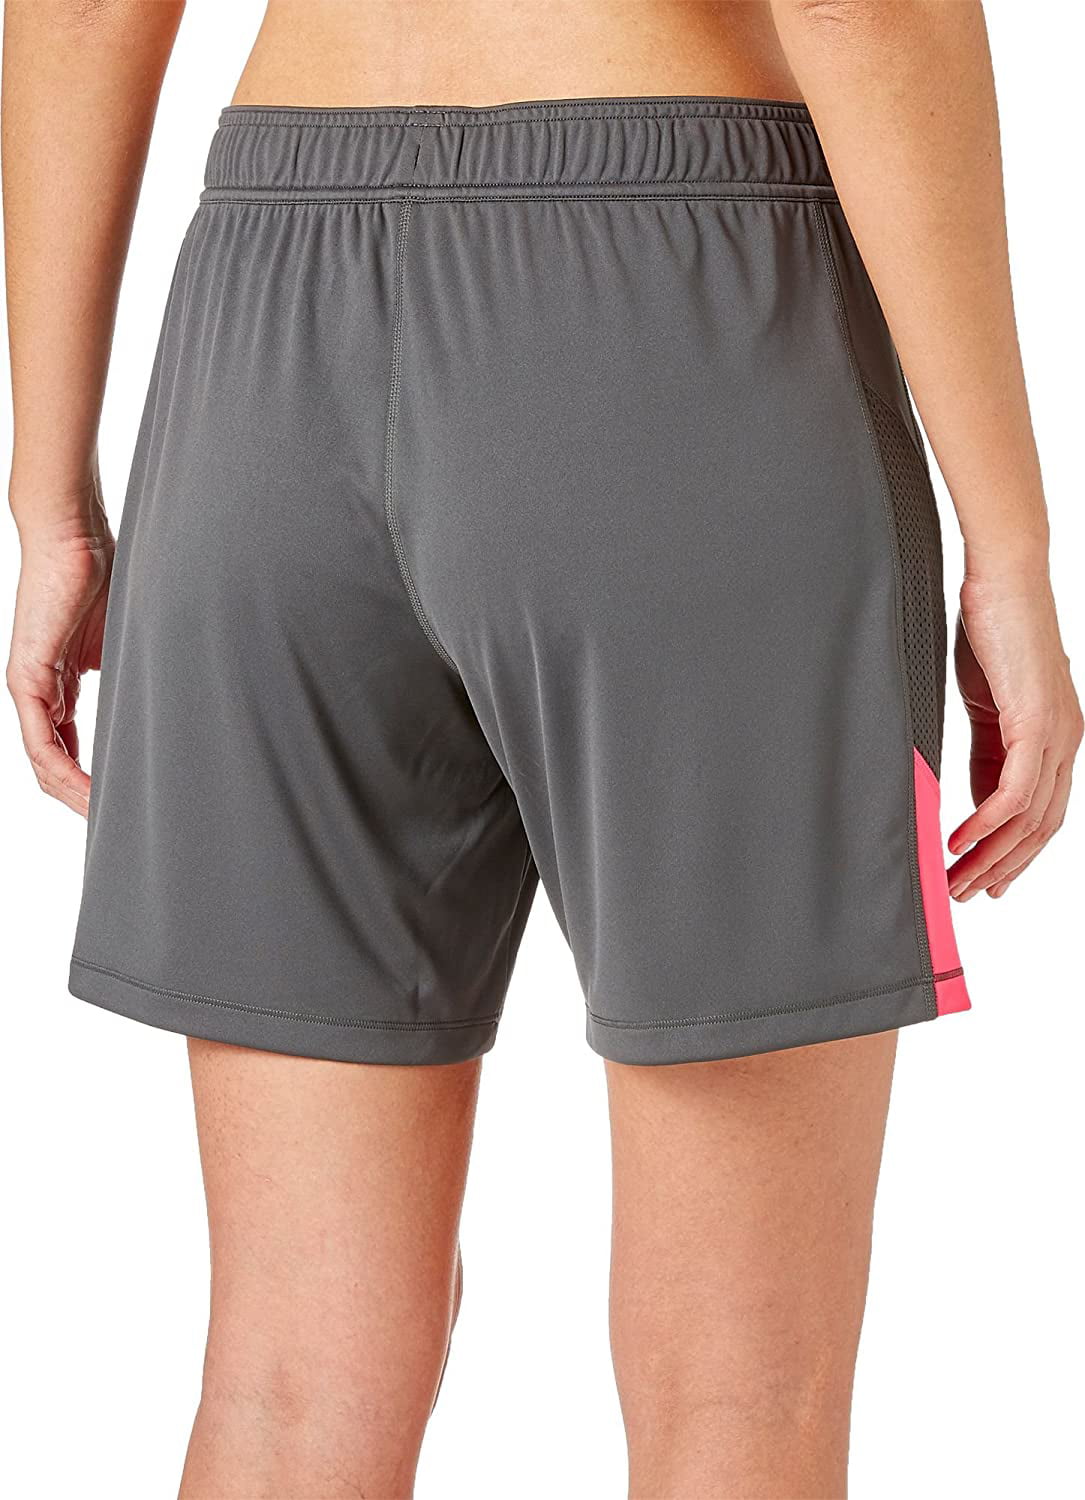 reebok women's workout shorts